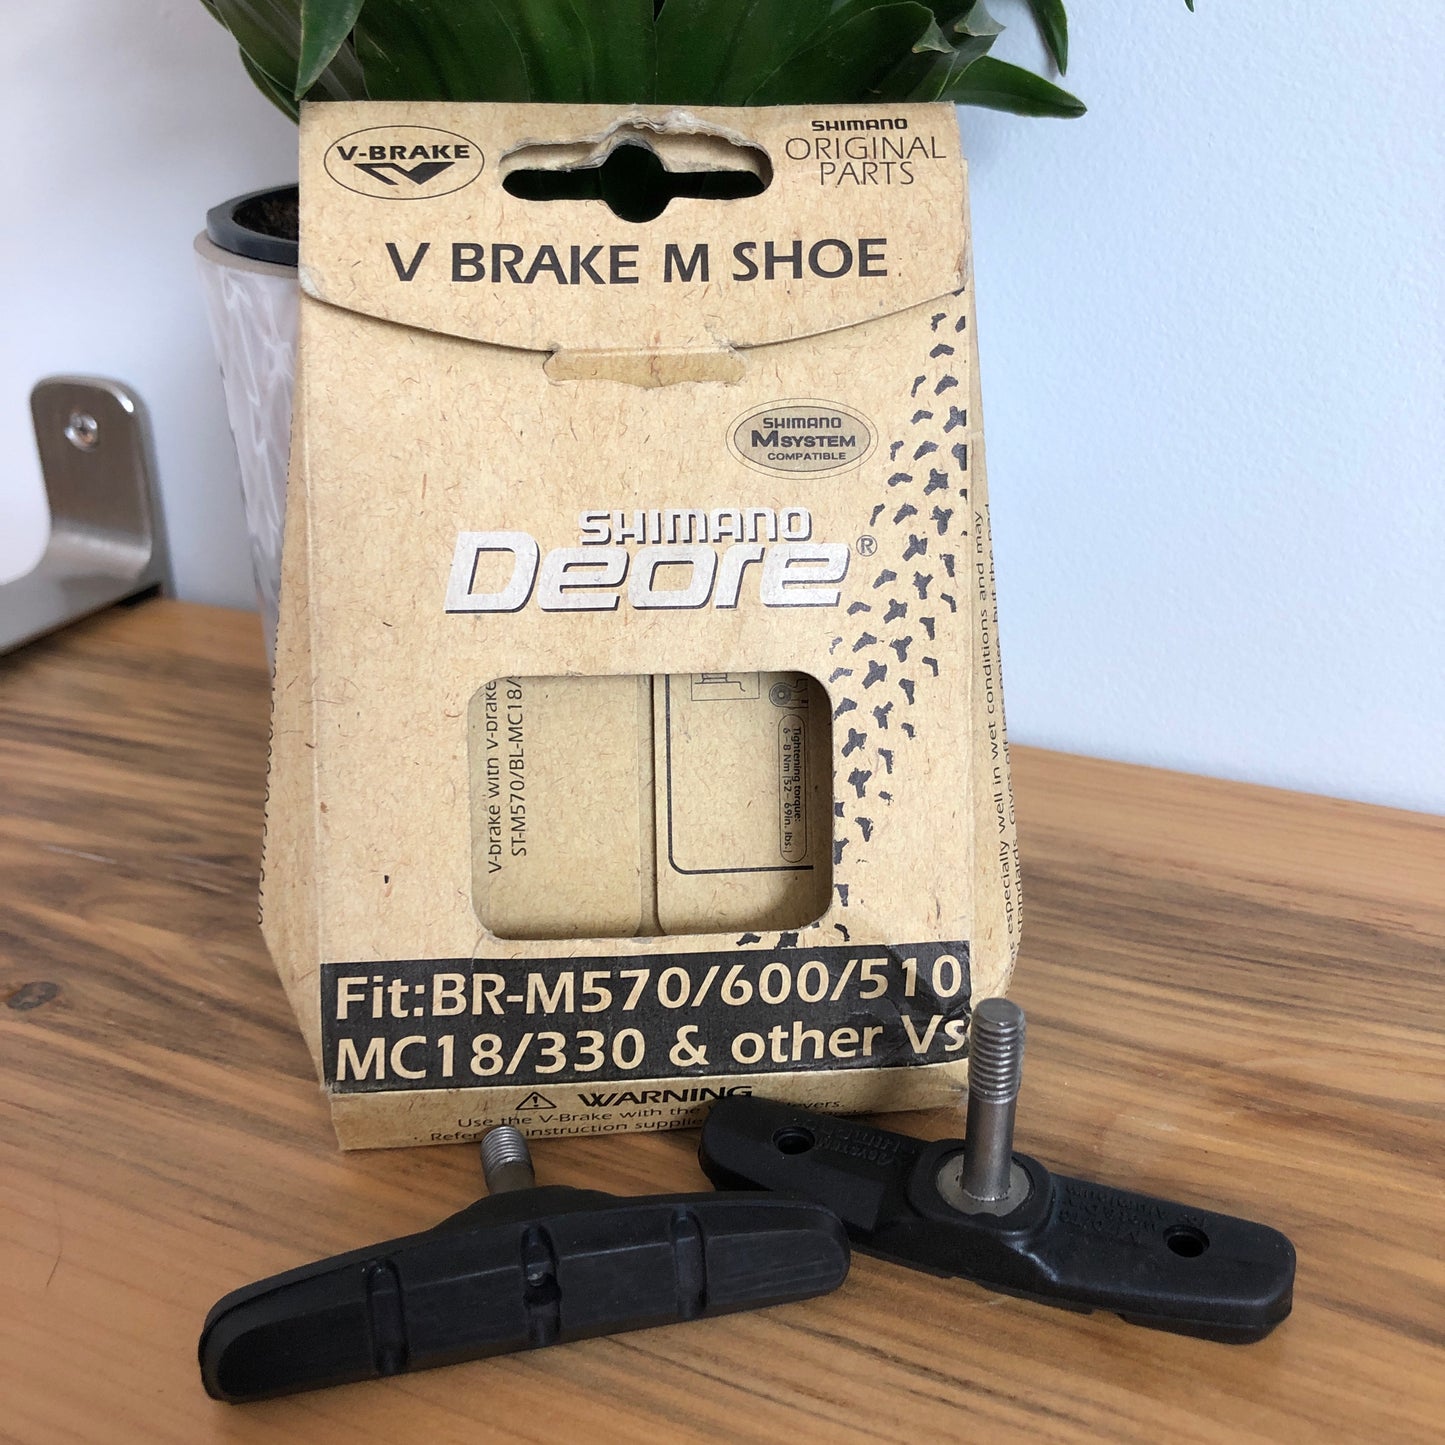 Brake Pads - Vbrake -Shimano Deore V-Brake "M Shoe" Brake Pads (NOS)